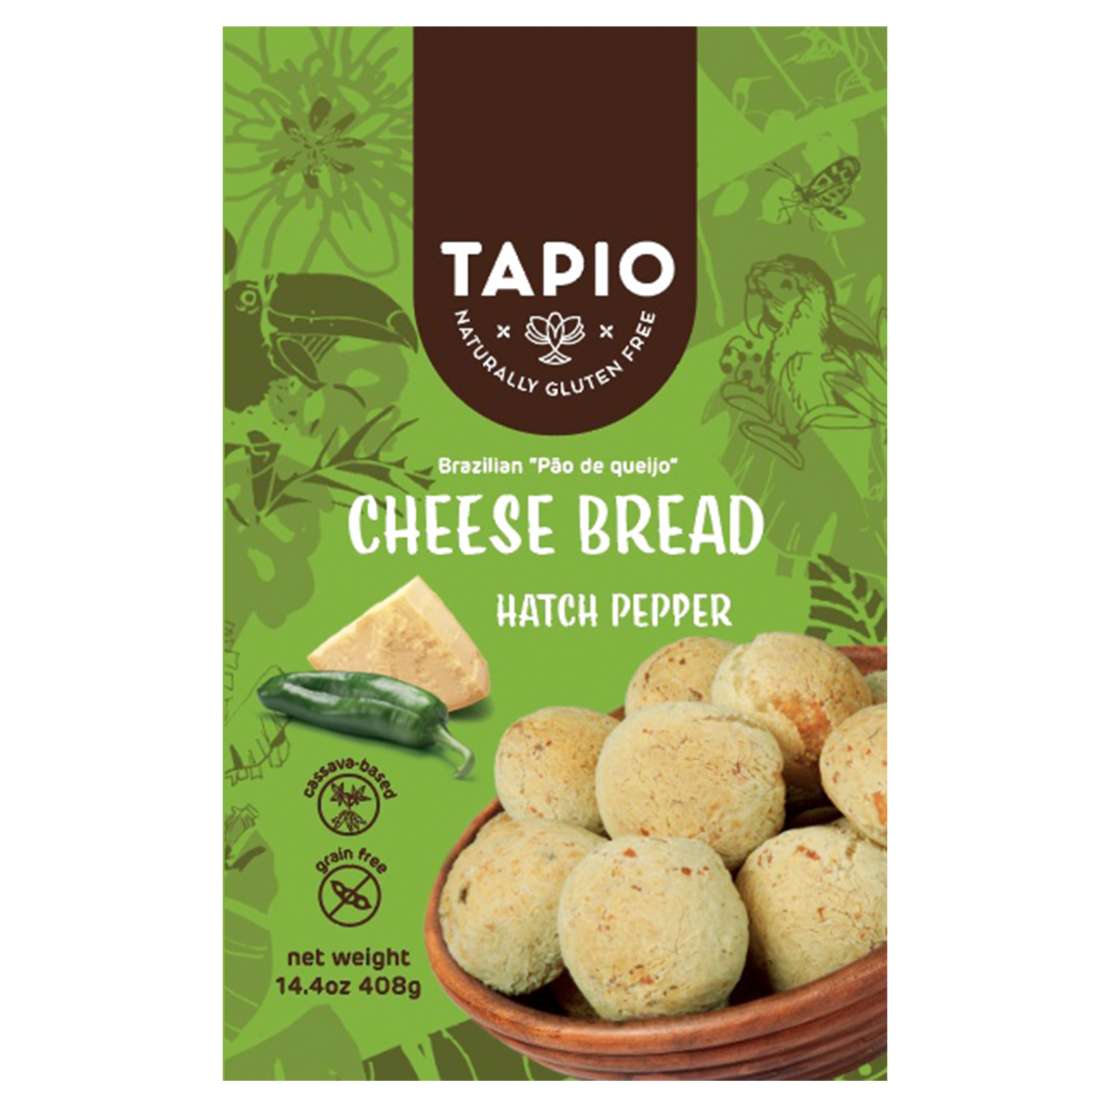 Tapio cheese bread pepper